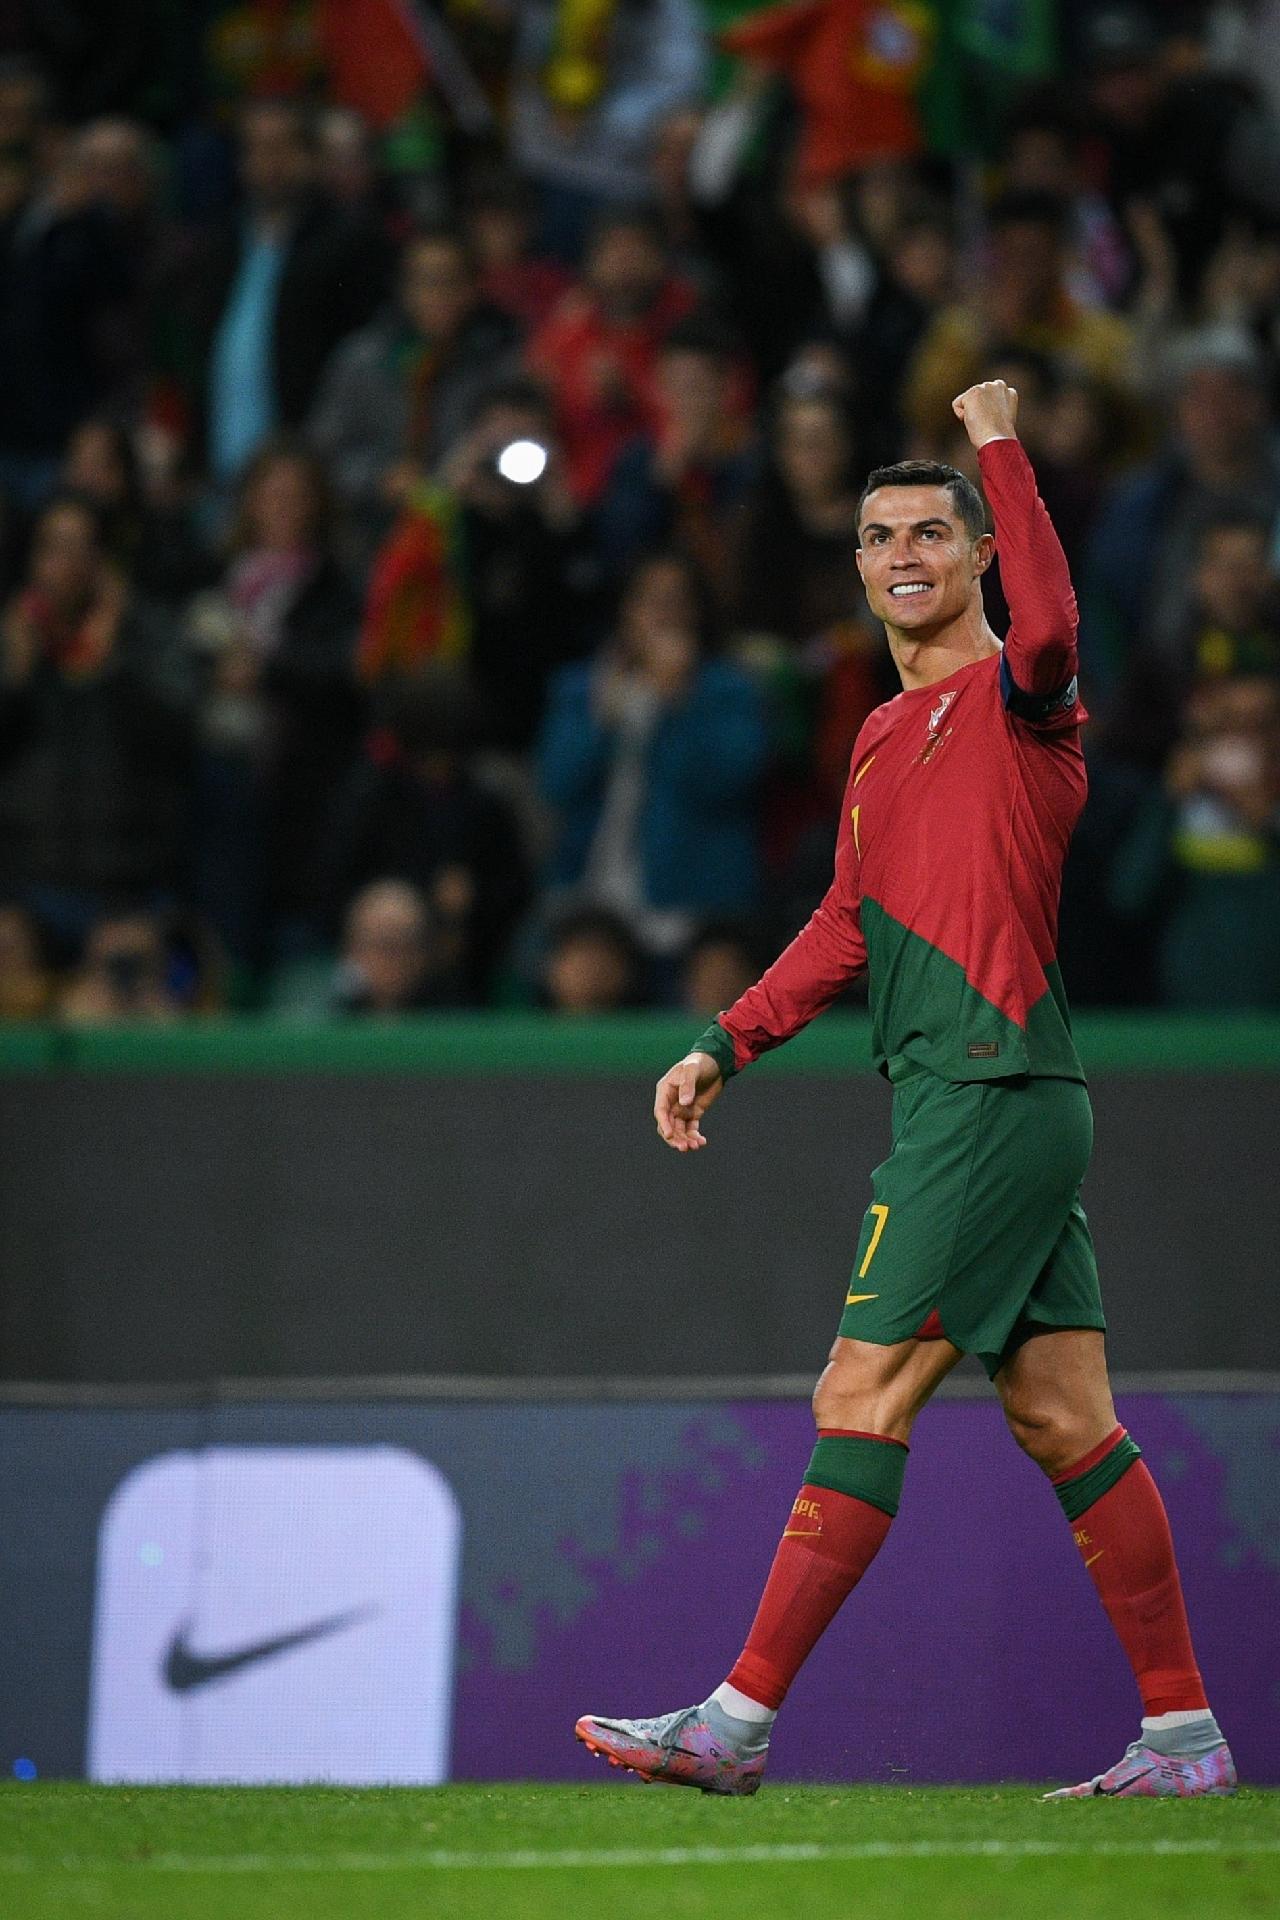 Os 120 gols do C. Ronaldo pela seleção Portuguesa. : r/futebol